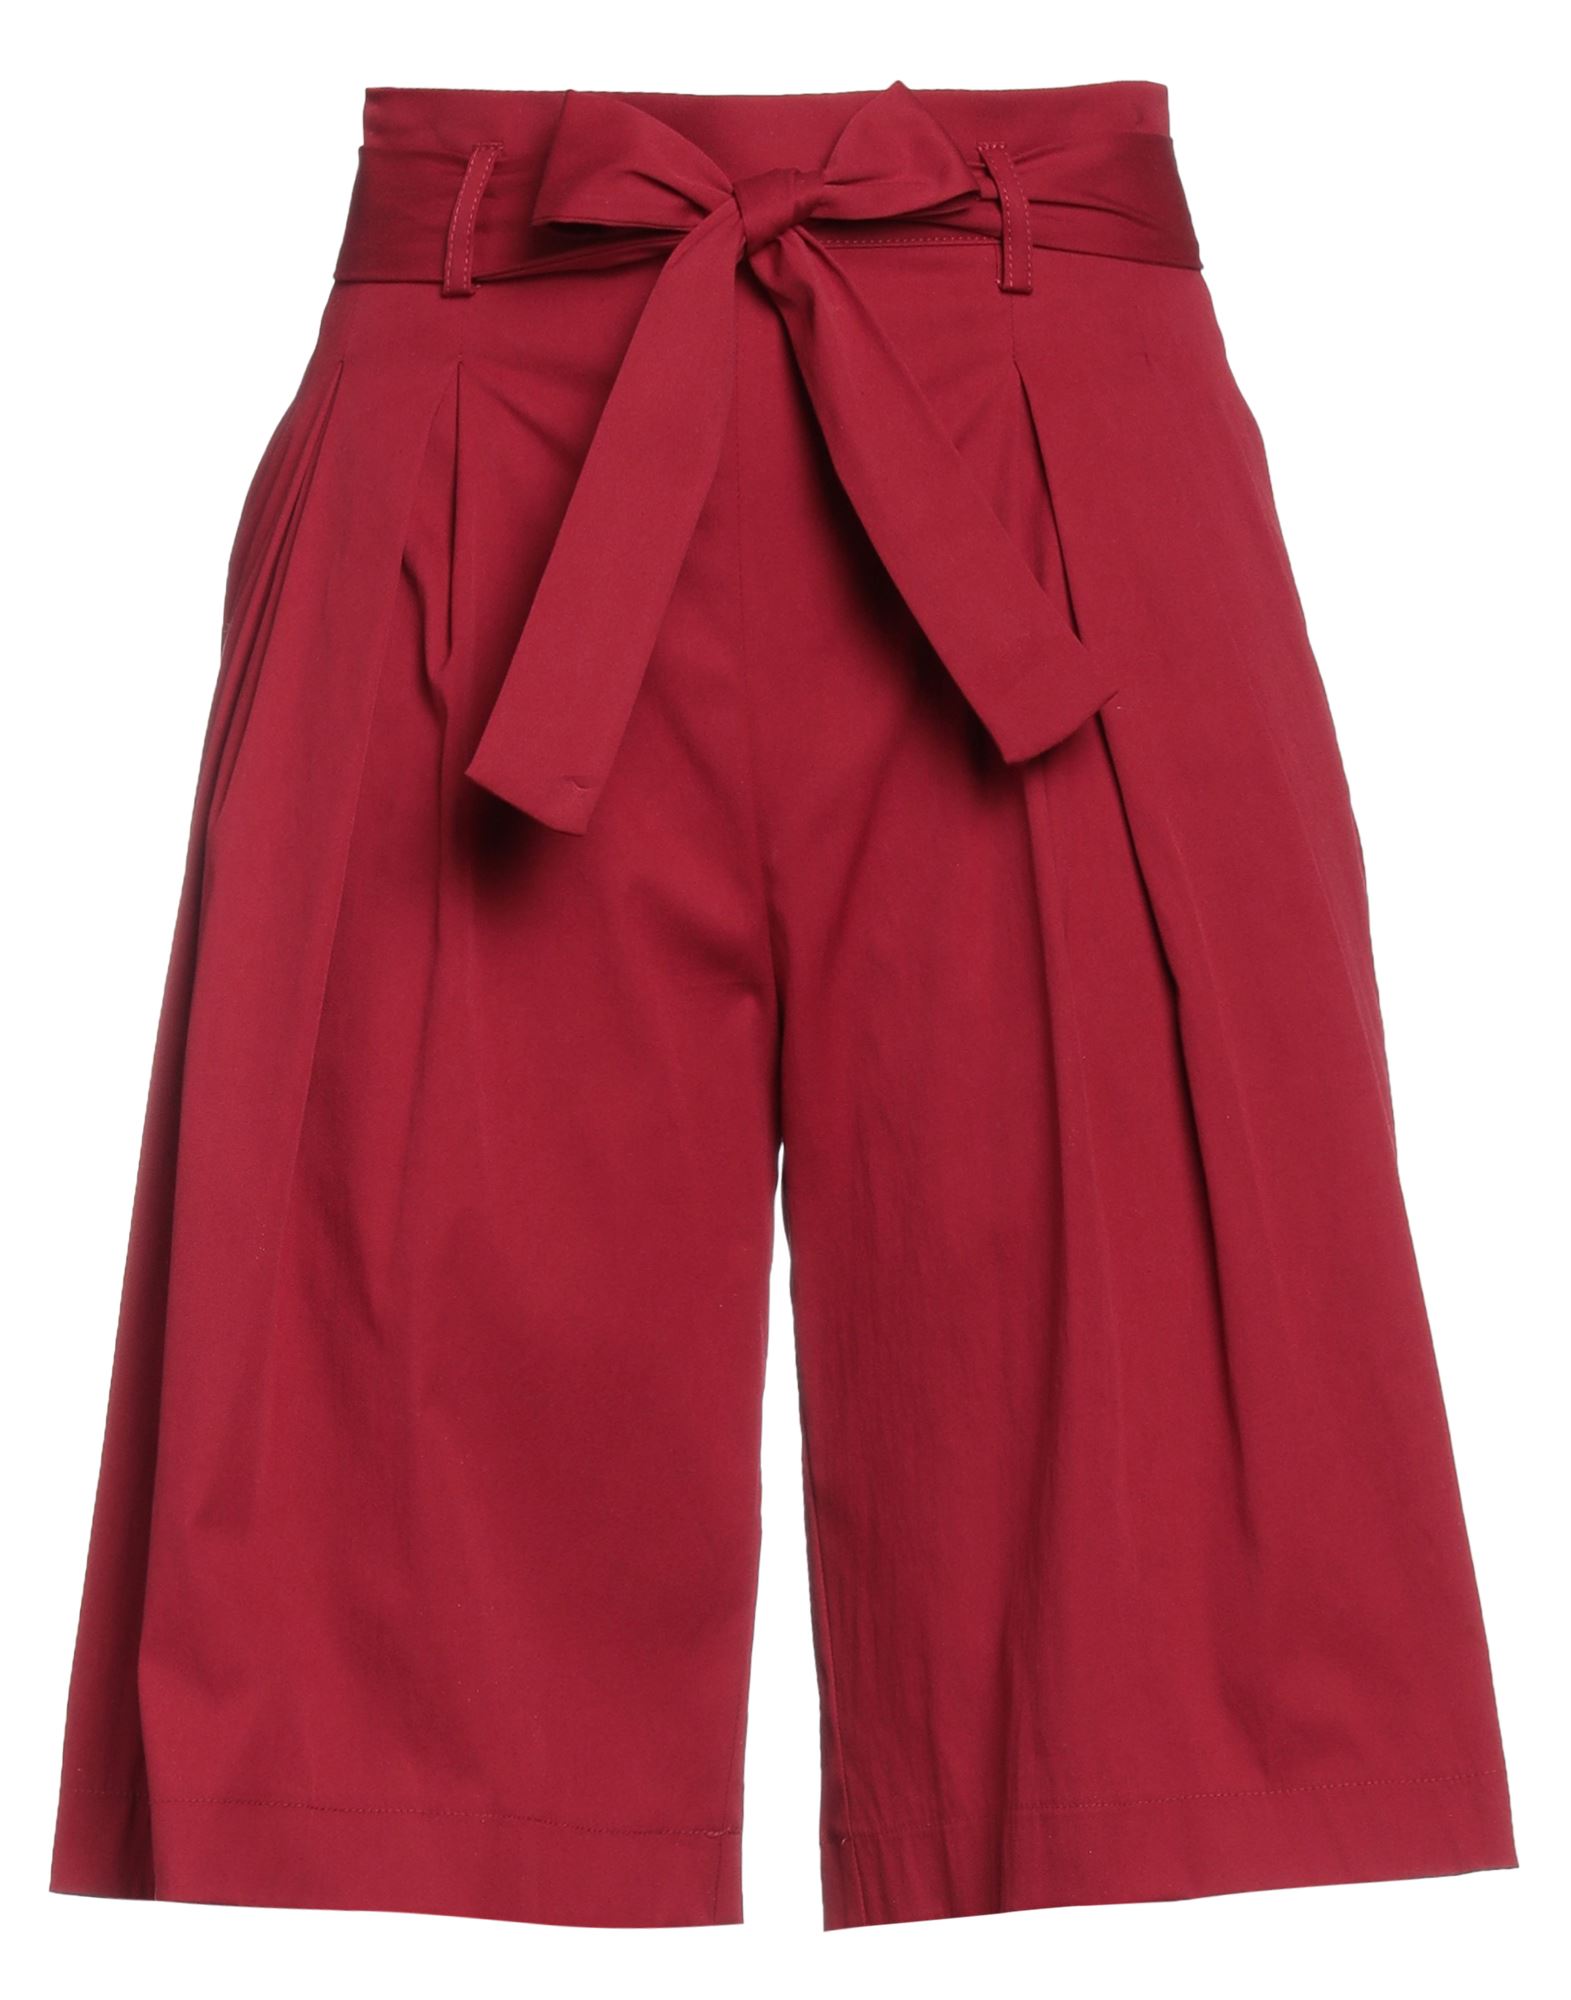 Diana Gallesi Woman Shorts & Bermuda Shorts Garnet Size 4 Cotton, Polyamide, Elastane In Red